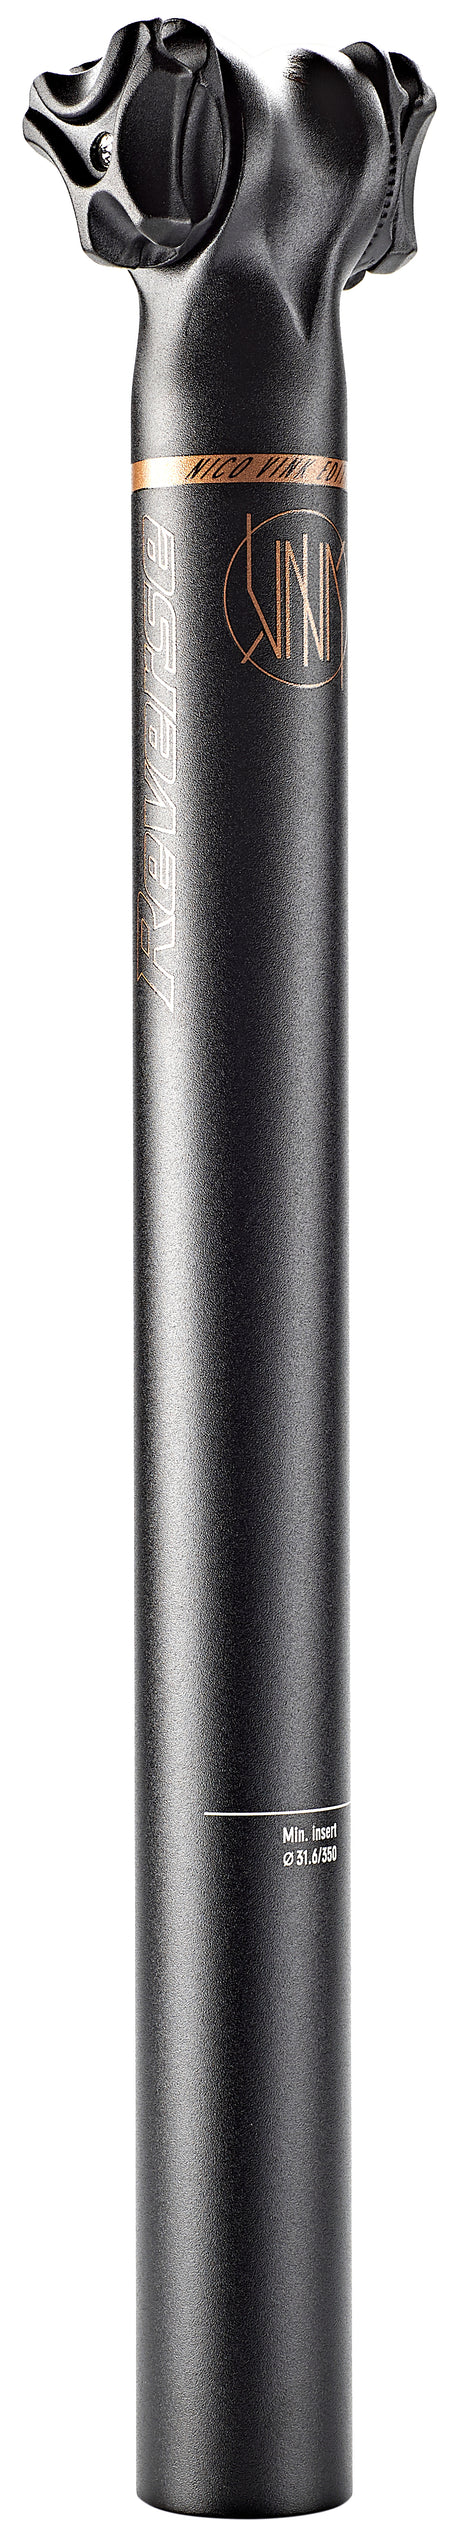 Reverse Nico Vink Sattelstütze Ø31,6mm schwarz/braun